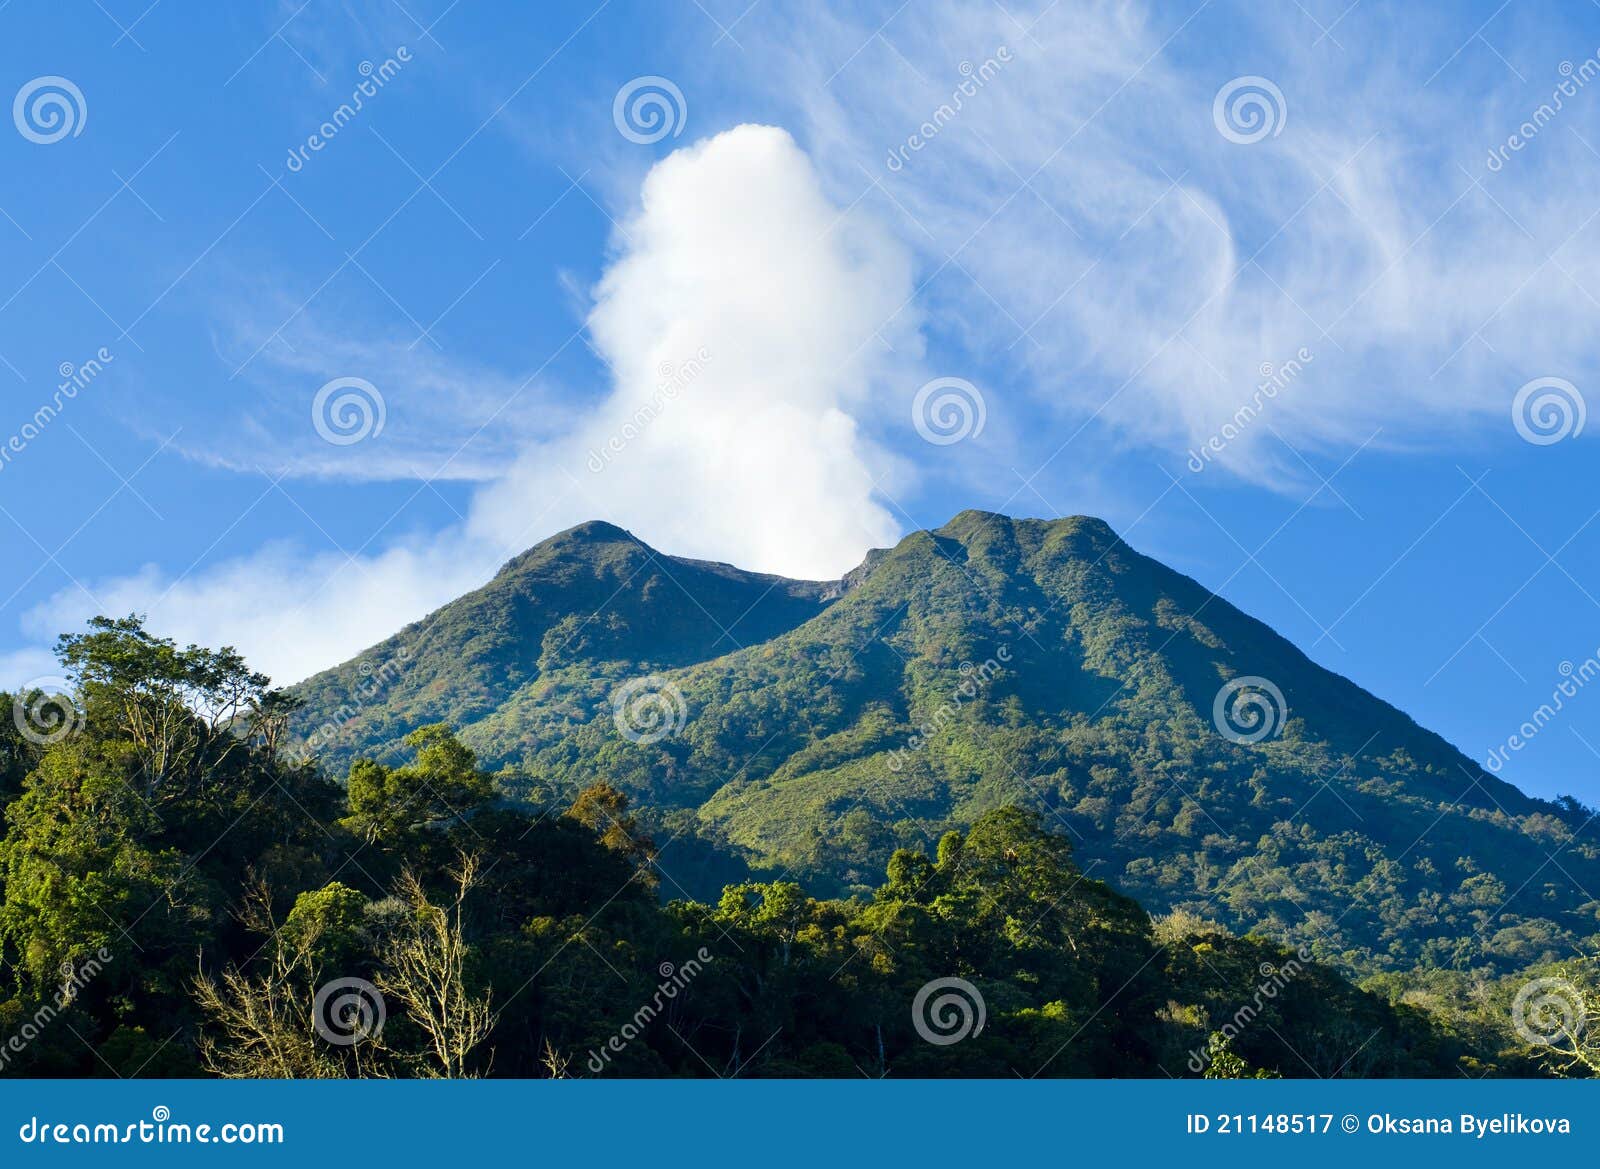 volcano mount sinabung at north sumatera